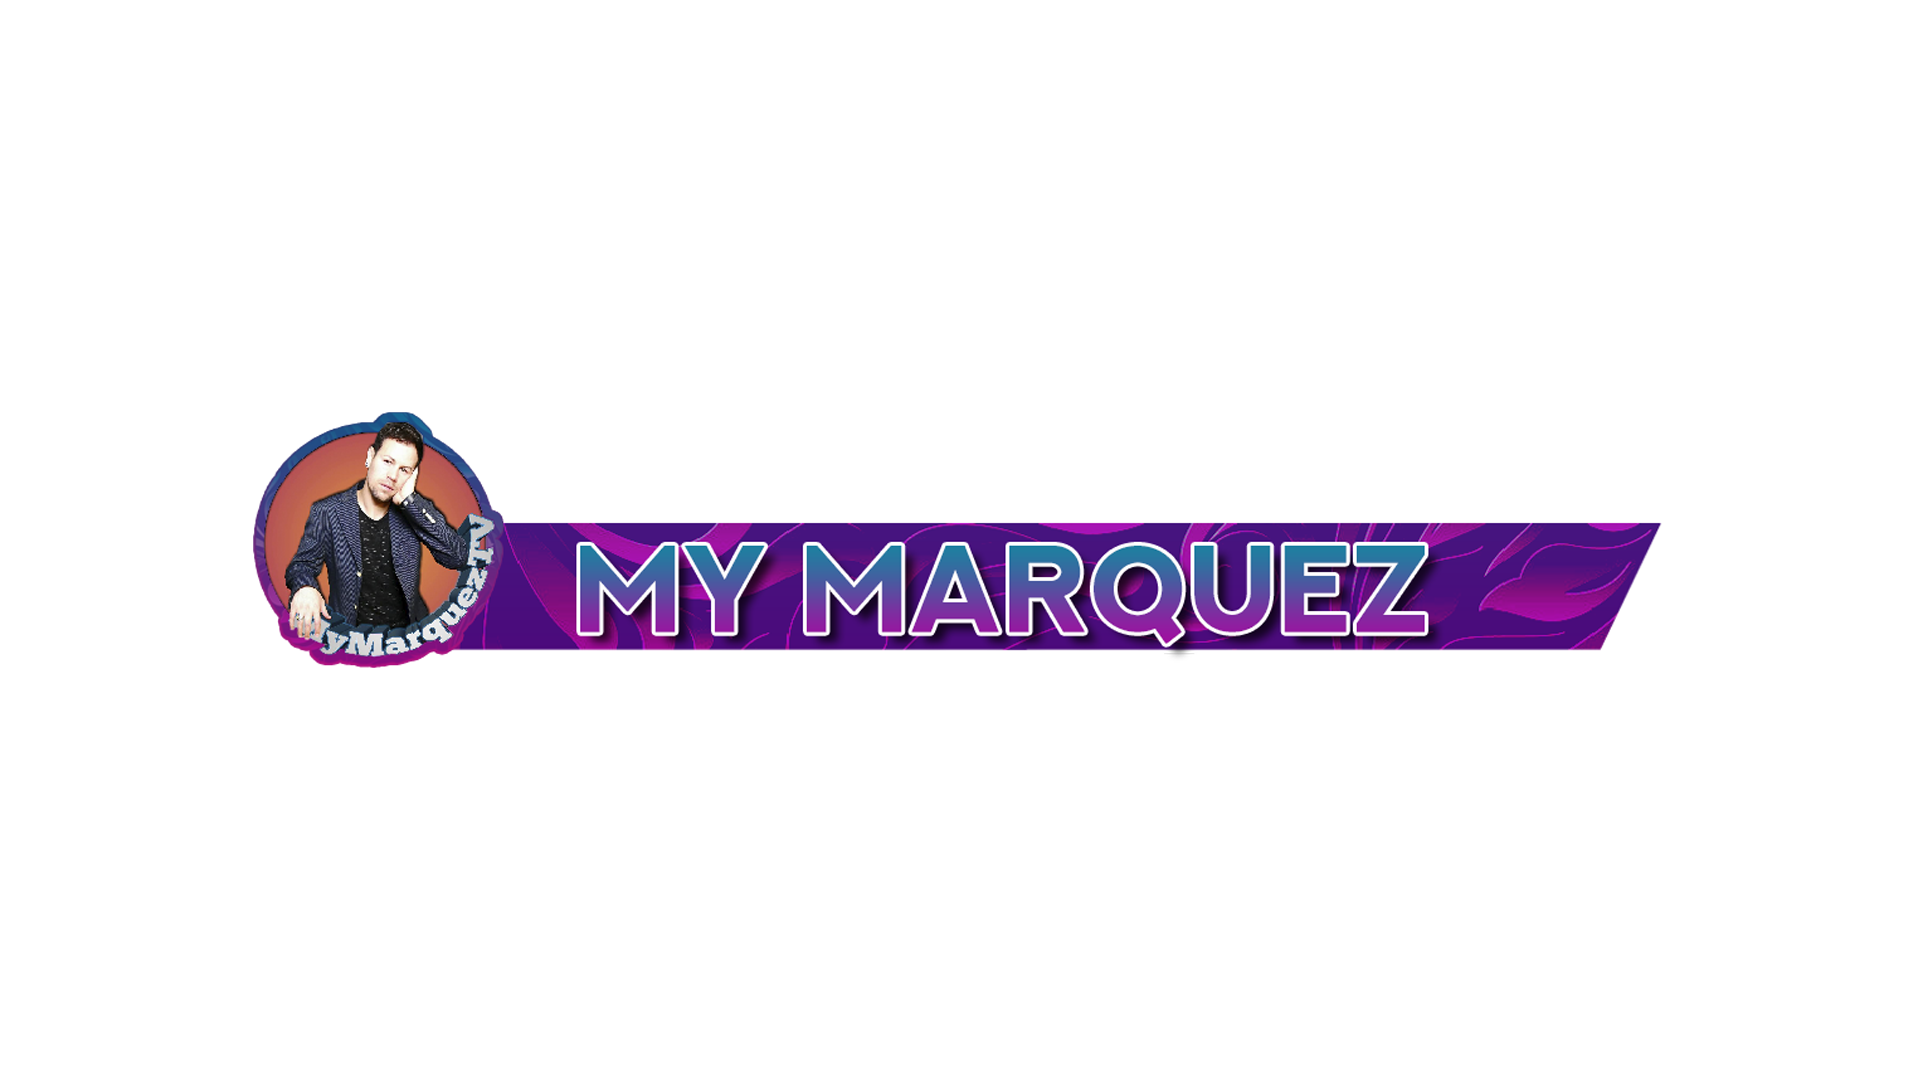 My Marquez